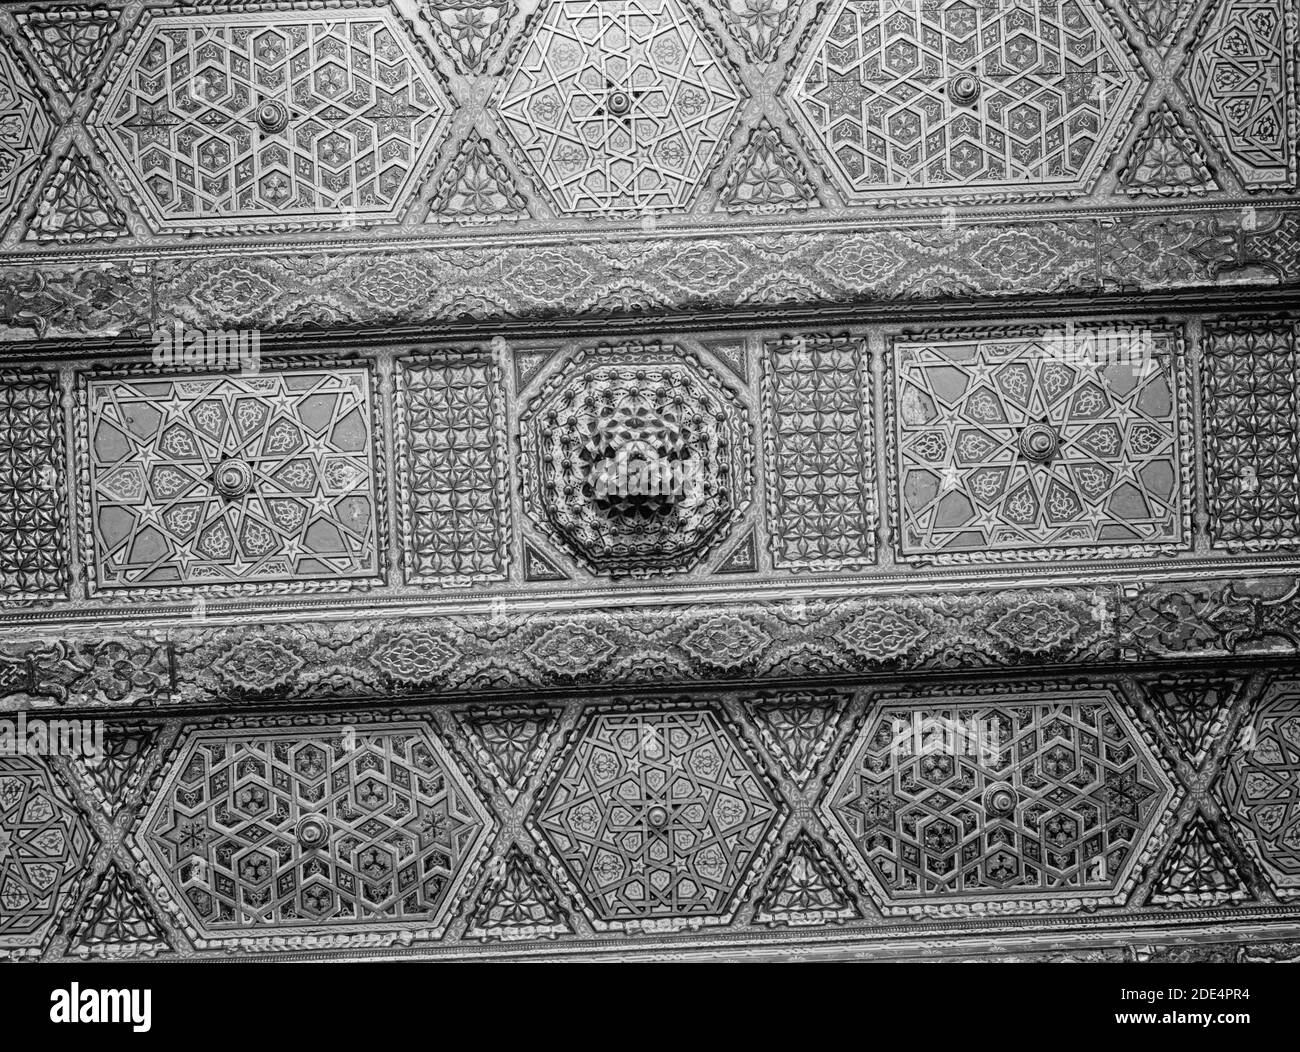 Originalunterschrift: Syrien. Damaskus. Alte Arabeske Decke eines Hauses in Damaskus. - Lage: Syrien--Damaskus ca. 1898-1946 Stockfoto